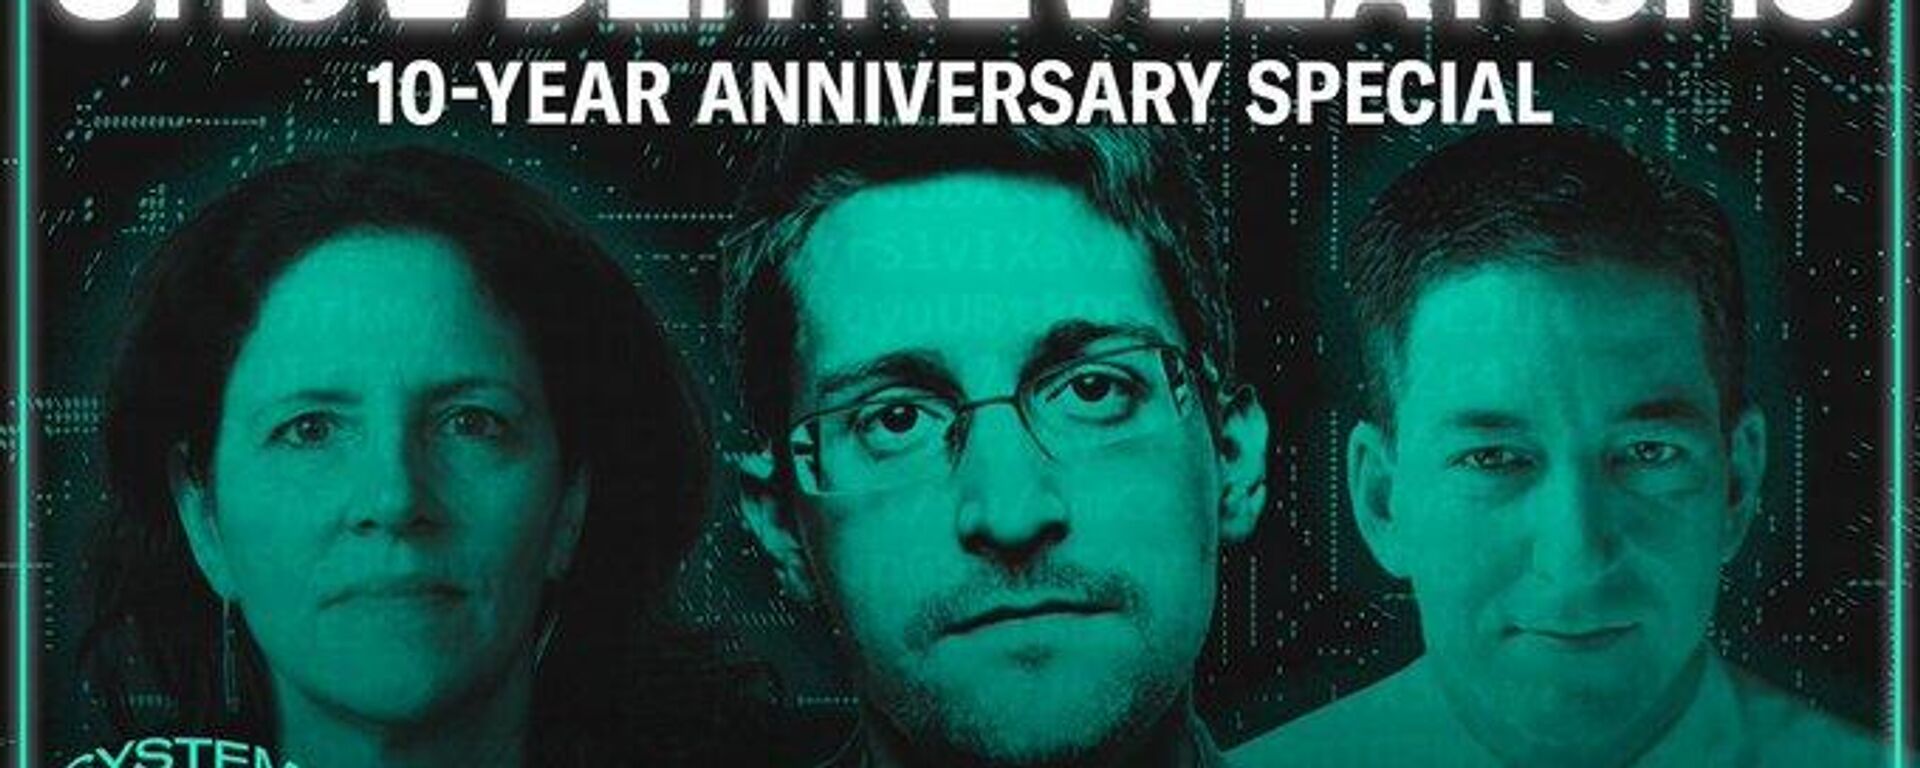 Edward Snowden (ortada), ABD'nin yasadışı küresel dinlemelerini ifşa etmesinin 10. yıldönümünde sızdırdığı belgeleri yayımlayan gazeteci Glenn Greenwald (sağda) ve film yapımcısı Laura Poitras'la dijital buluşma gerçekleştirirken soruları yanıtladı.  - Sputnik Türkiye, 1920, 08.06.2023